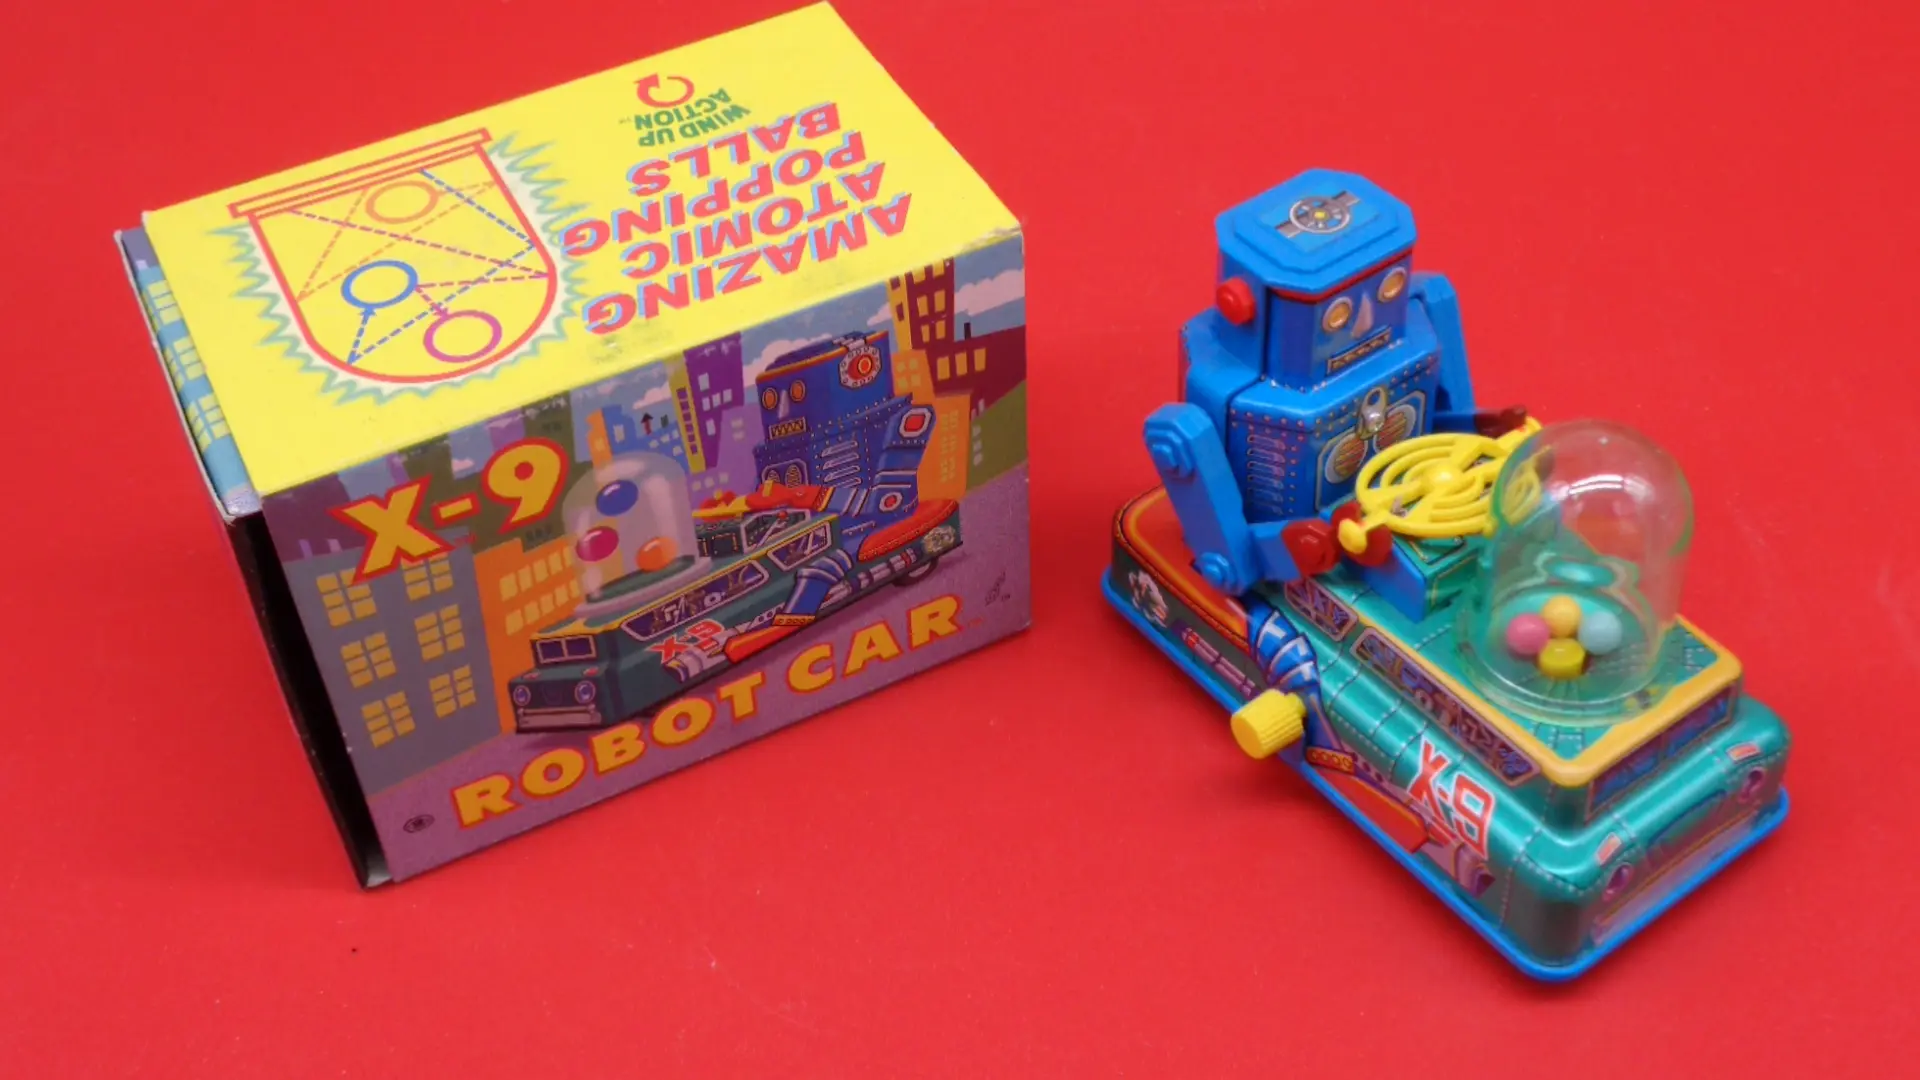 Robot car with original box tin wind-up toy